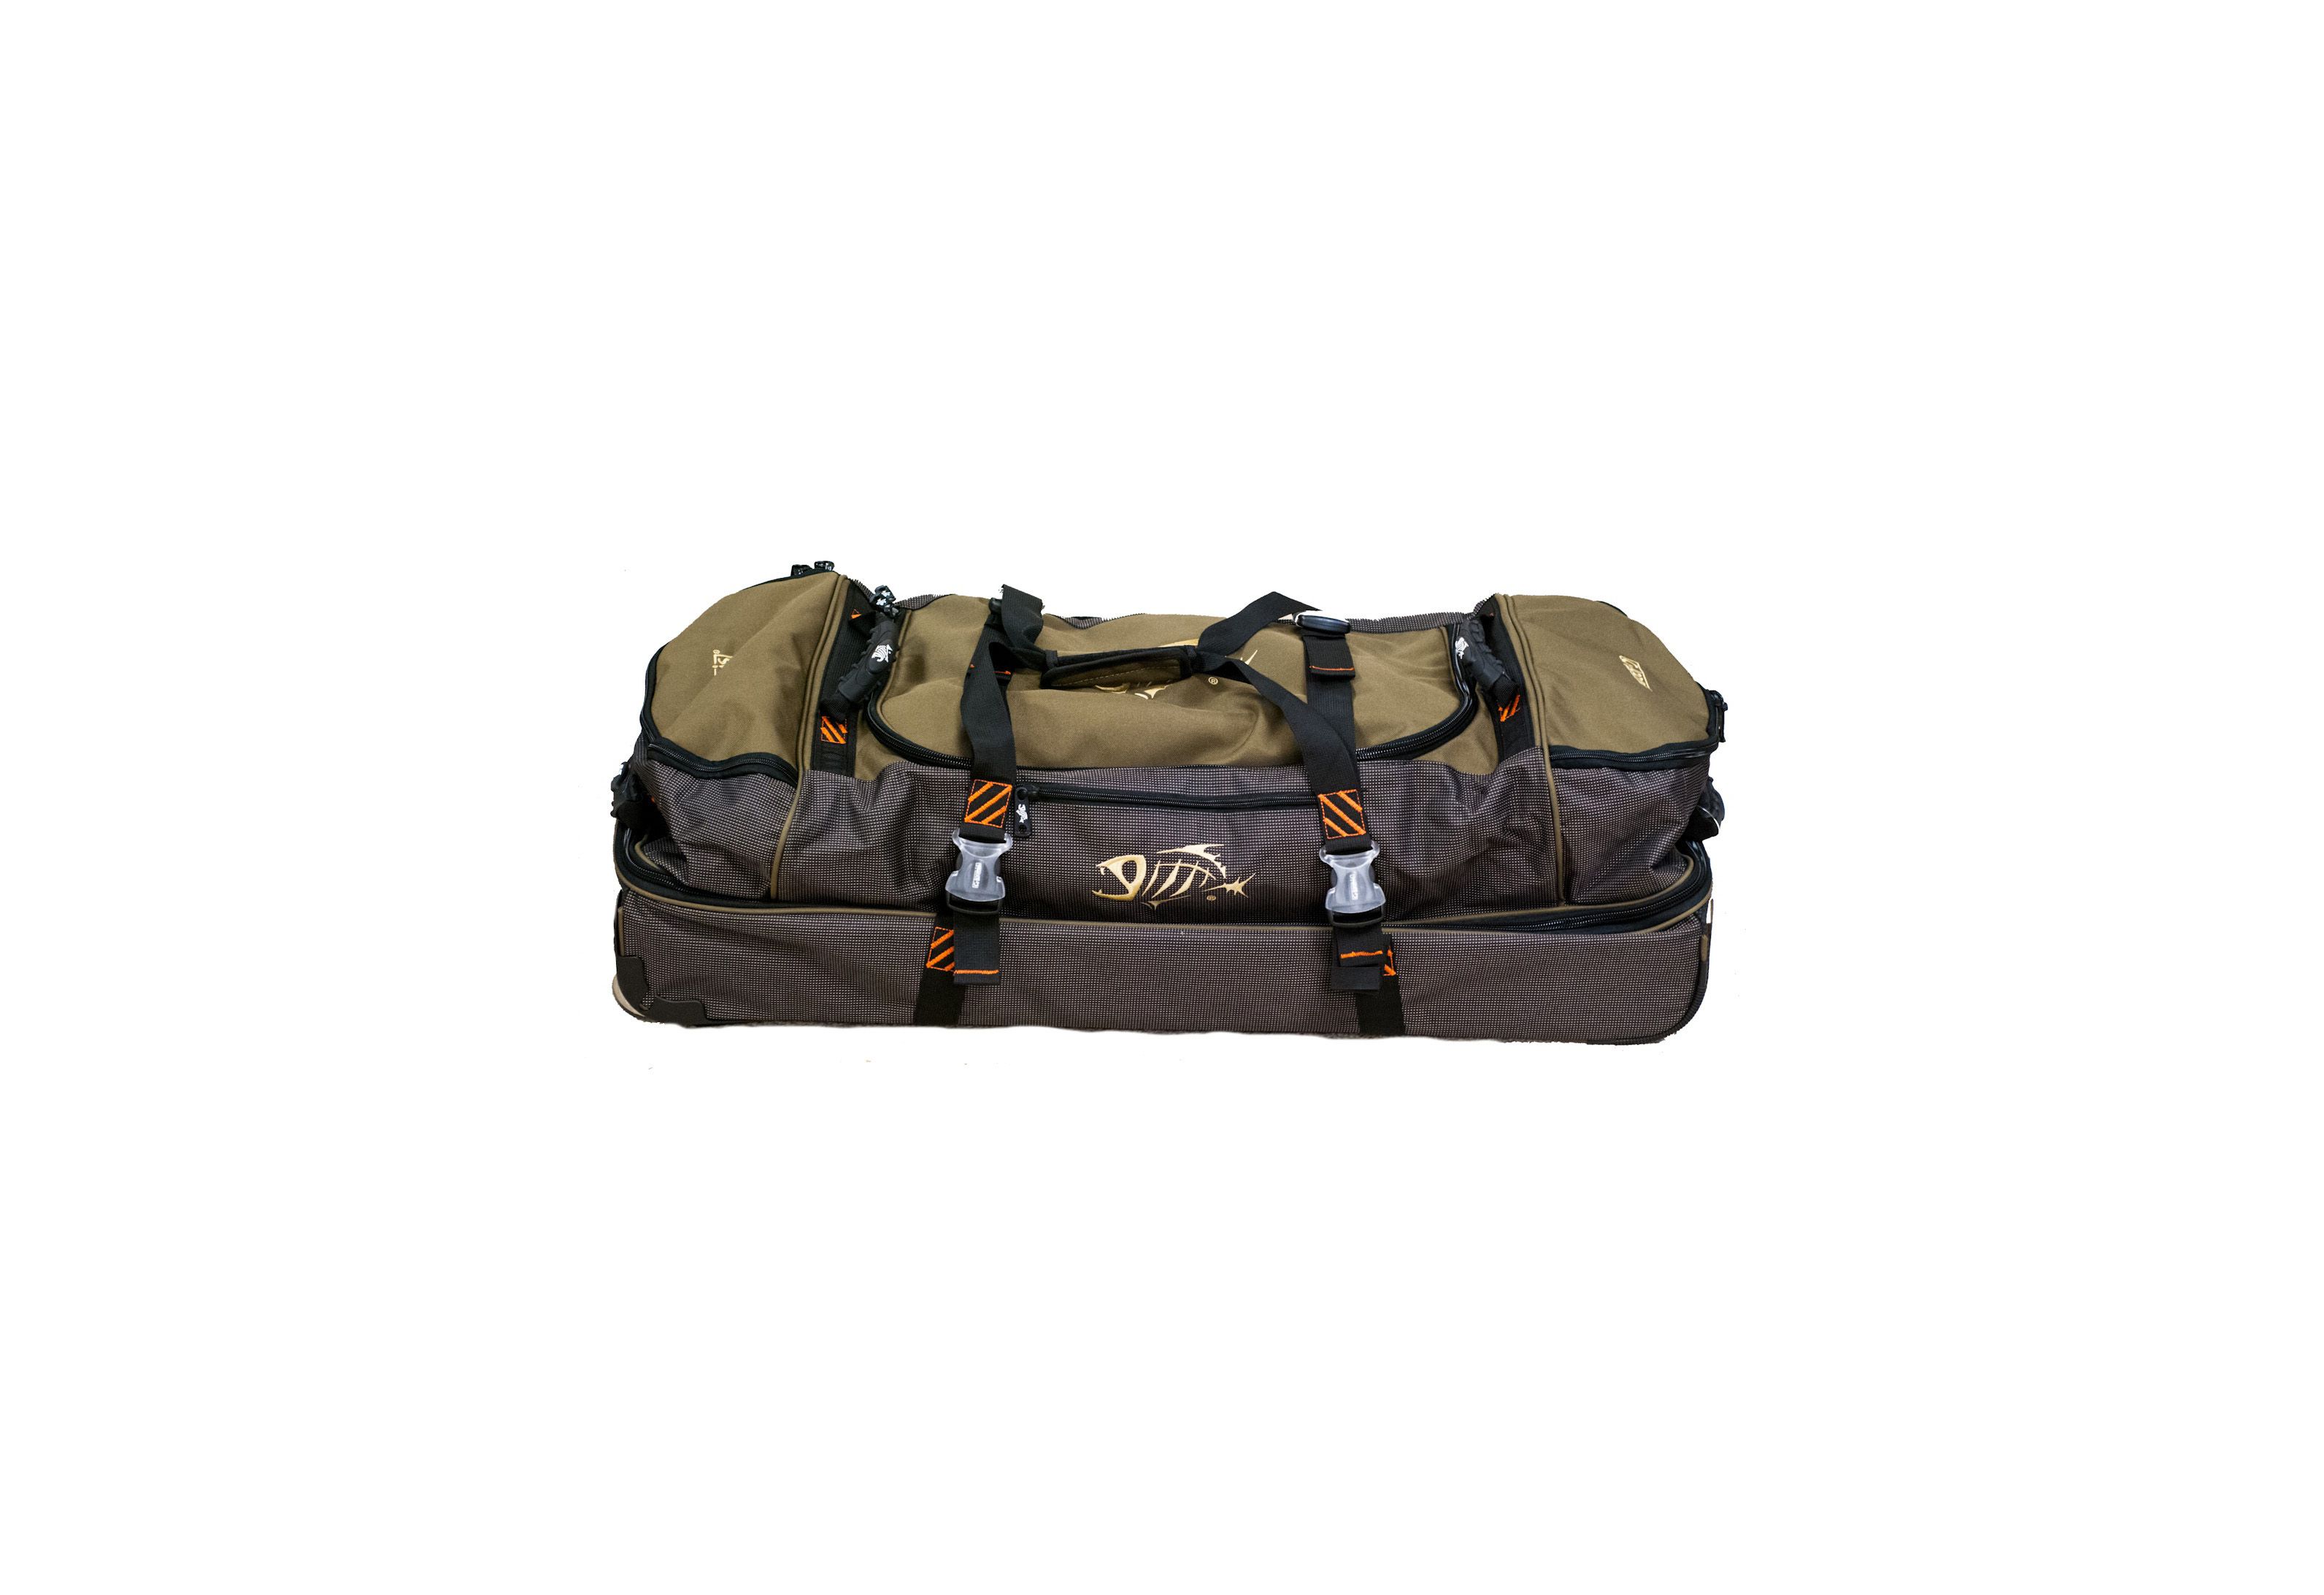 Loomis Luggage Duffel Bag Roller Bag FlyMasters